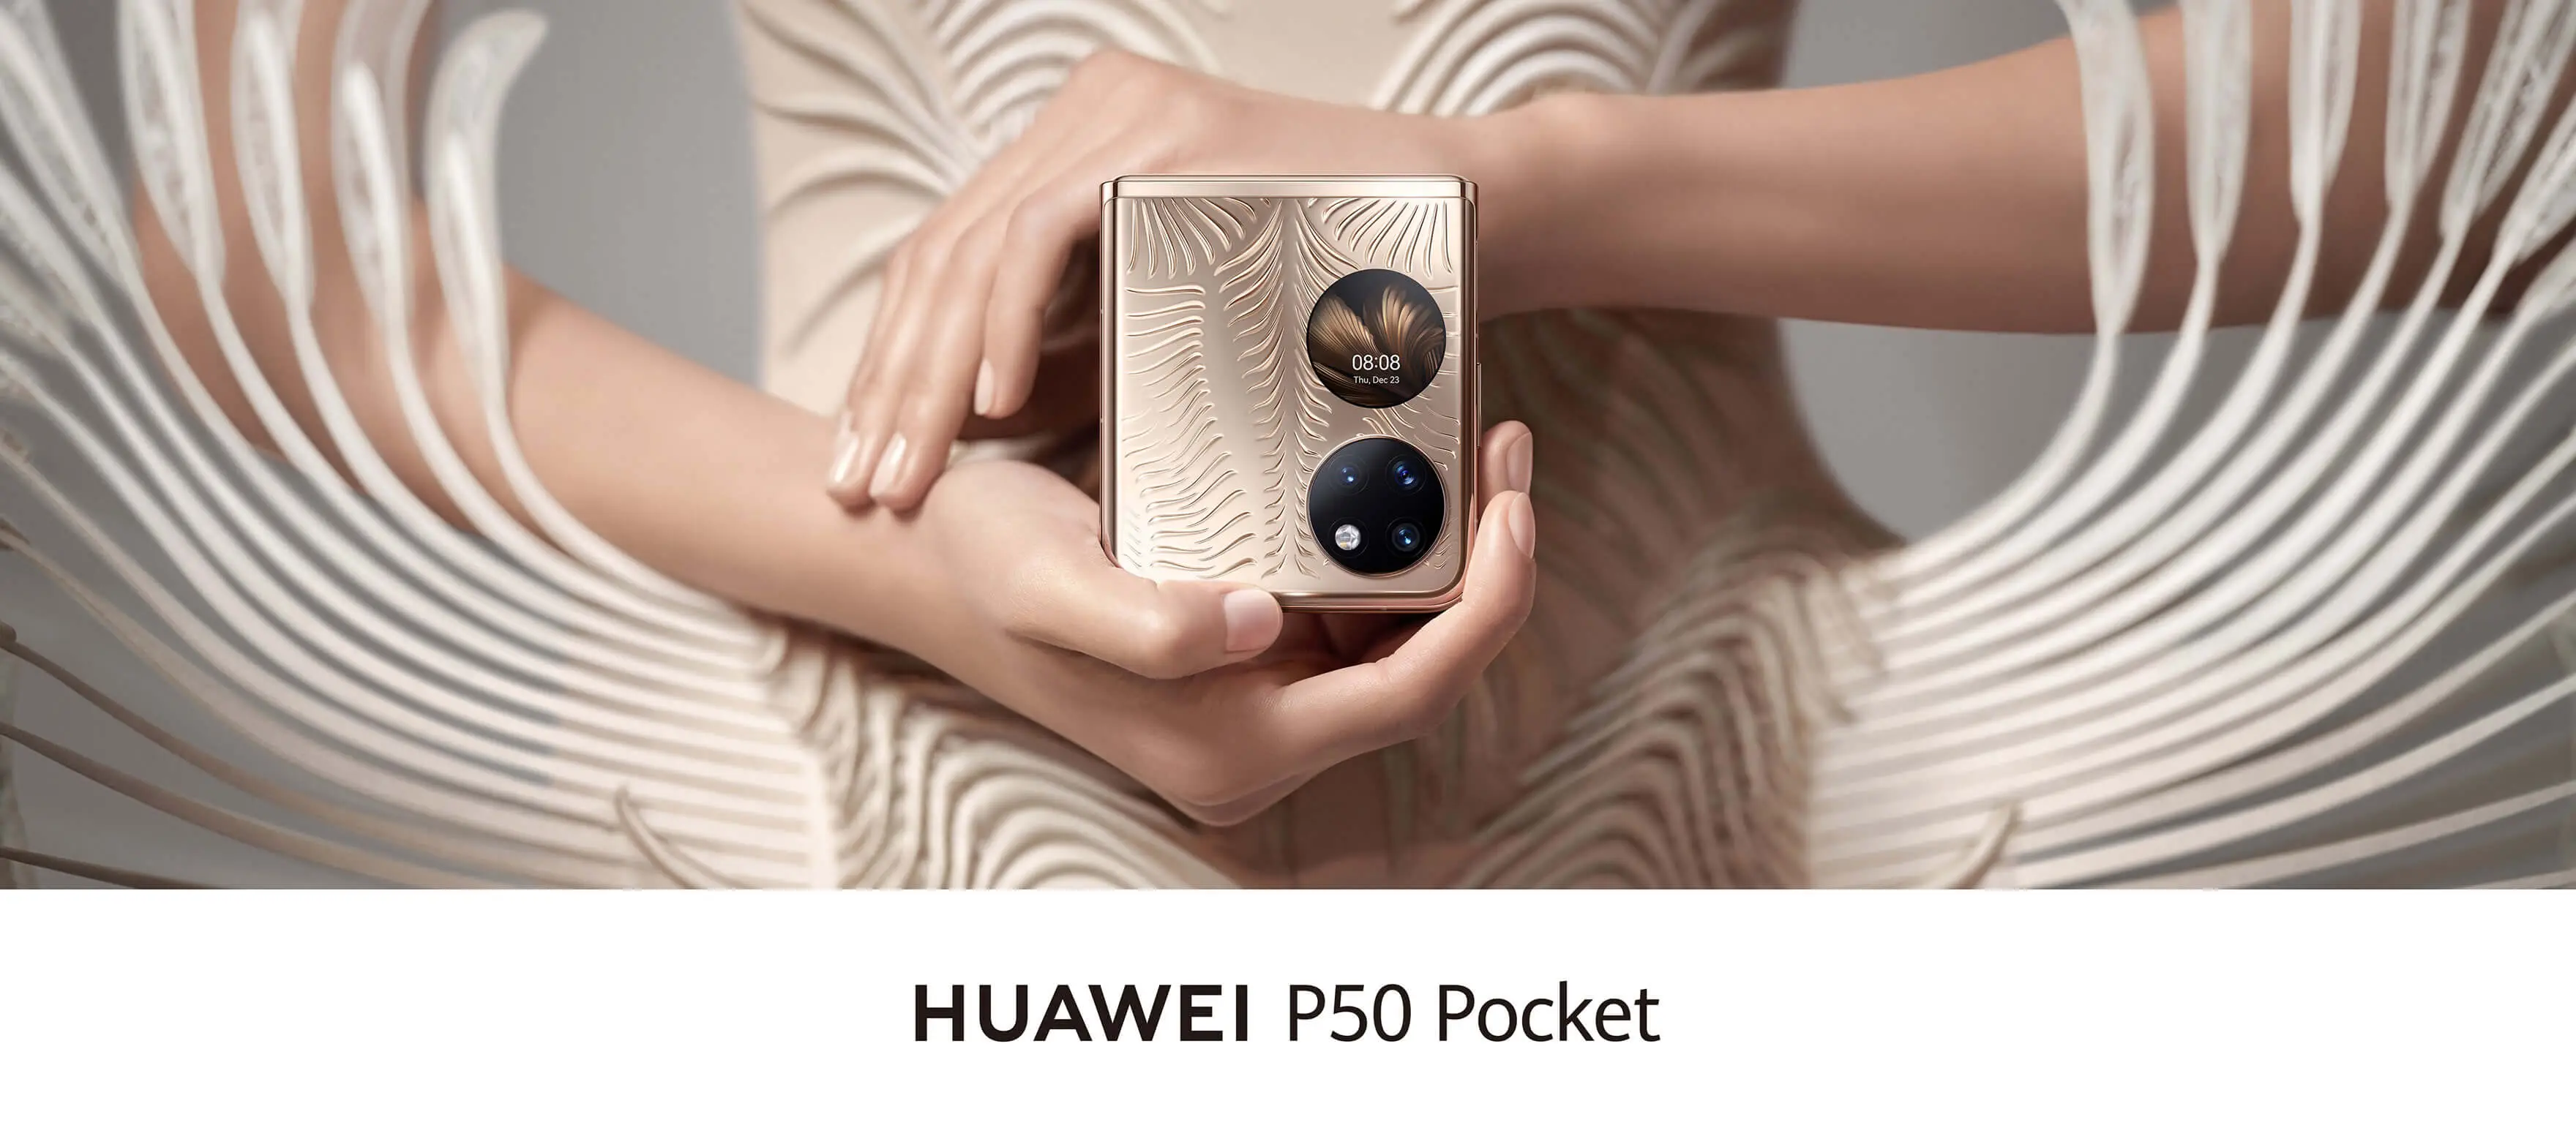 تصاویر گوشی هوآوی  Huawei P50 Pocket عکس 8